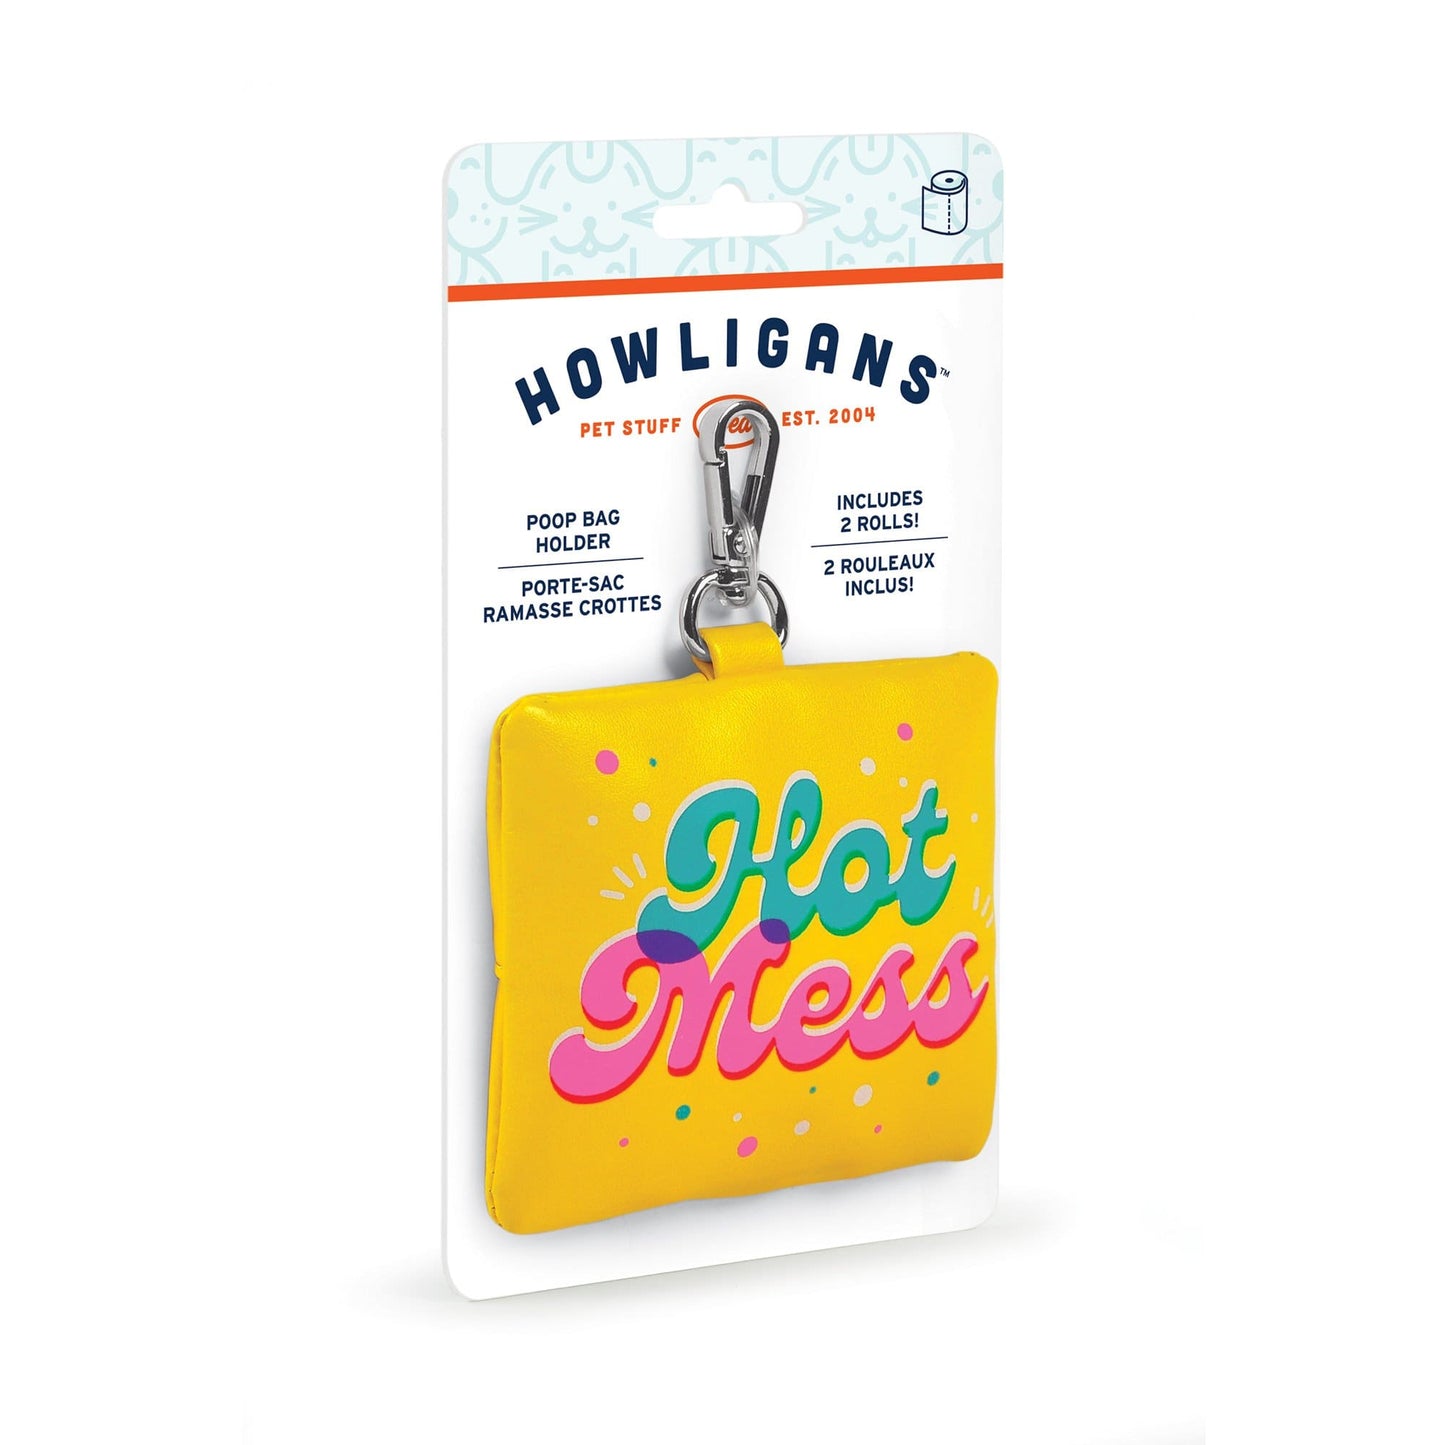 Howligans Poop Bag Holder - Hot Mess